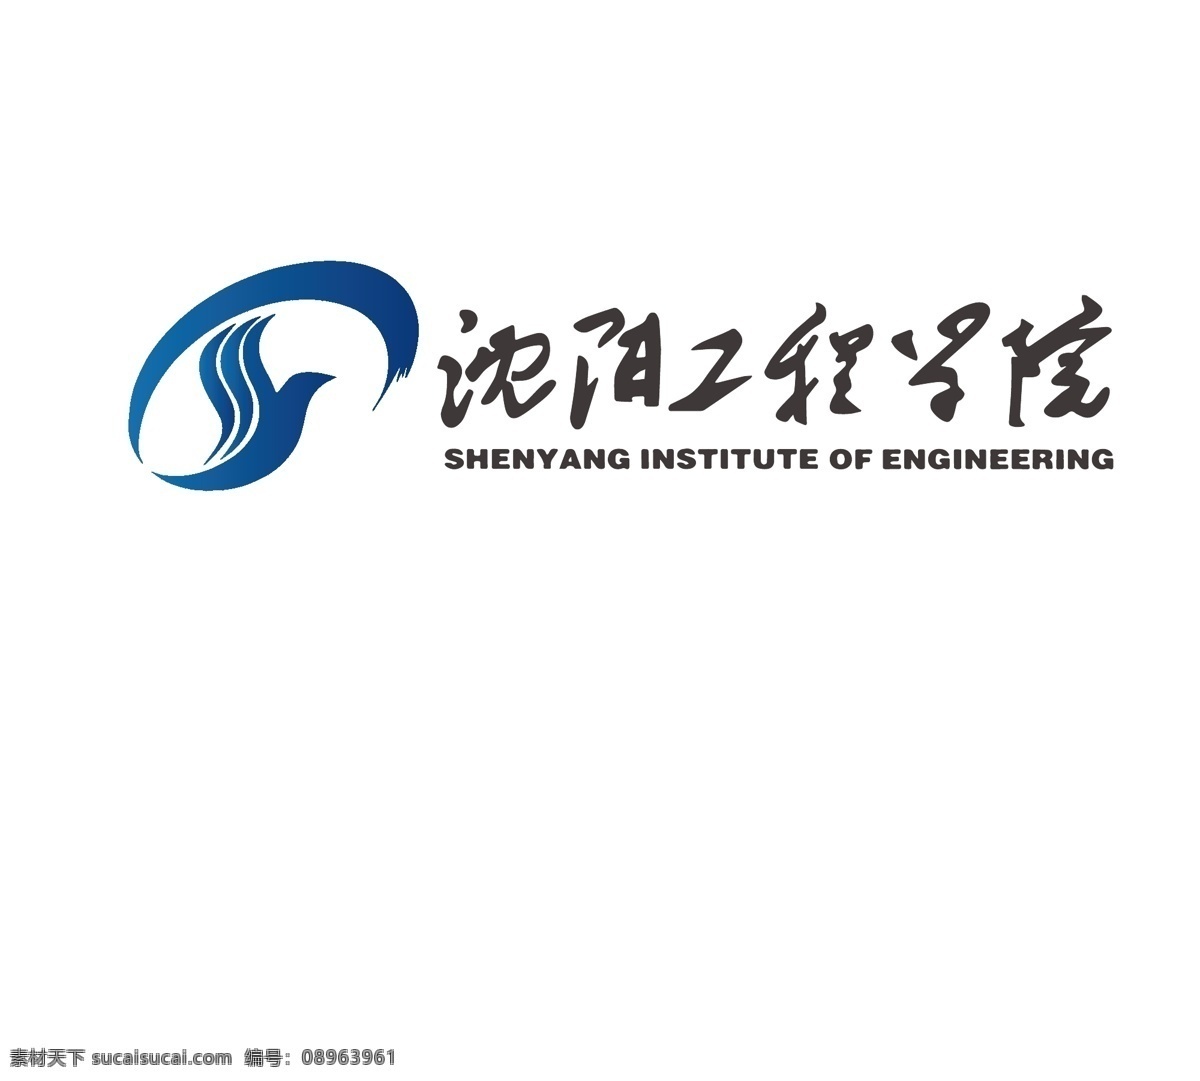 沈阳工程学院 校徽 沈阳 工程 学院 标志 标志图标 企业 logo